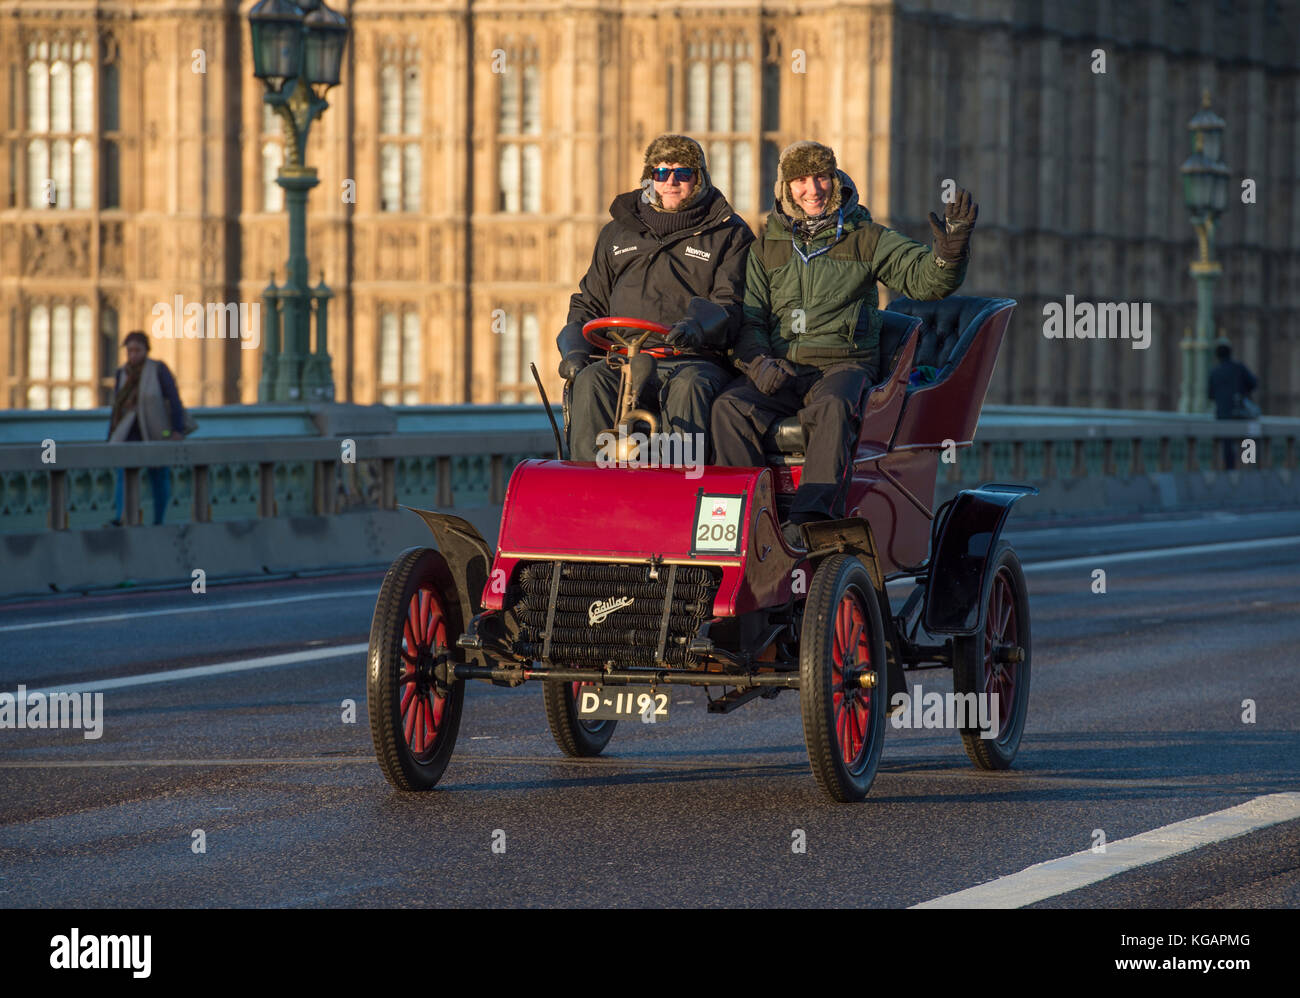 5 novembre 2017. Bonhams de Londres à Brighton, la course de voiture de vétéran, la plus longue course automobile au monde, 1903 Cadillac sur le pont de Westminster. Banque D'Images